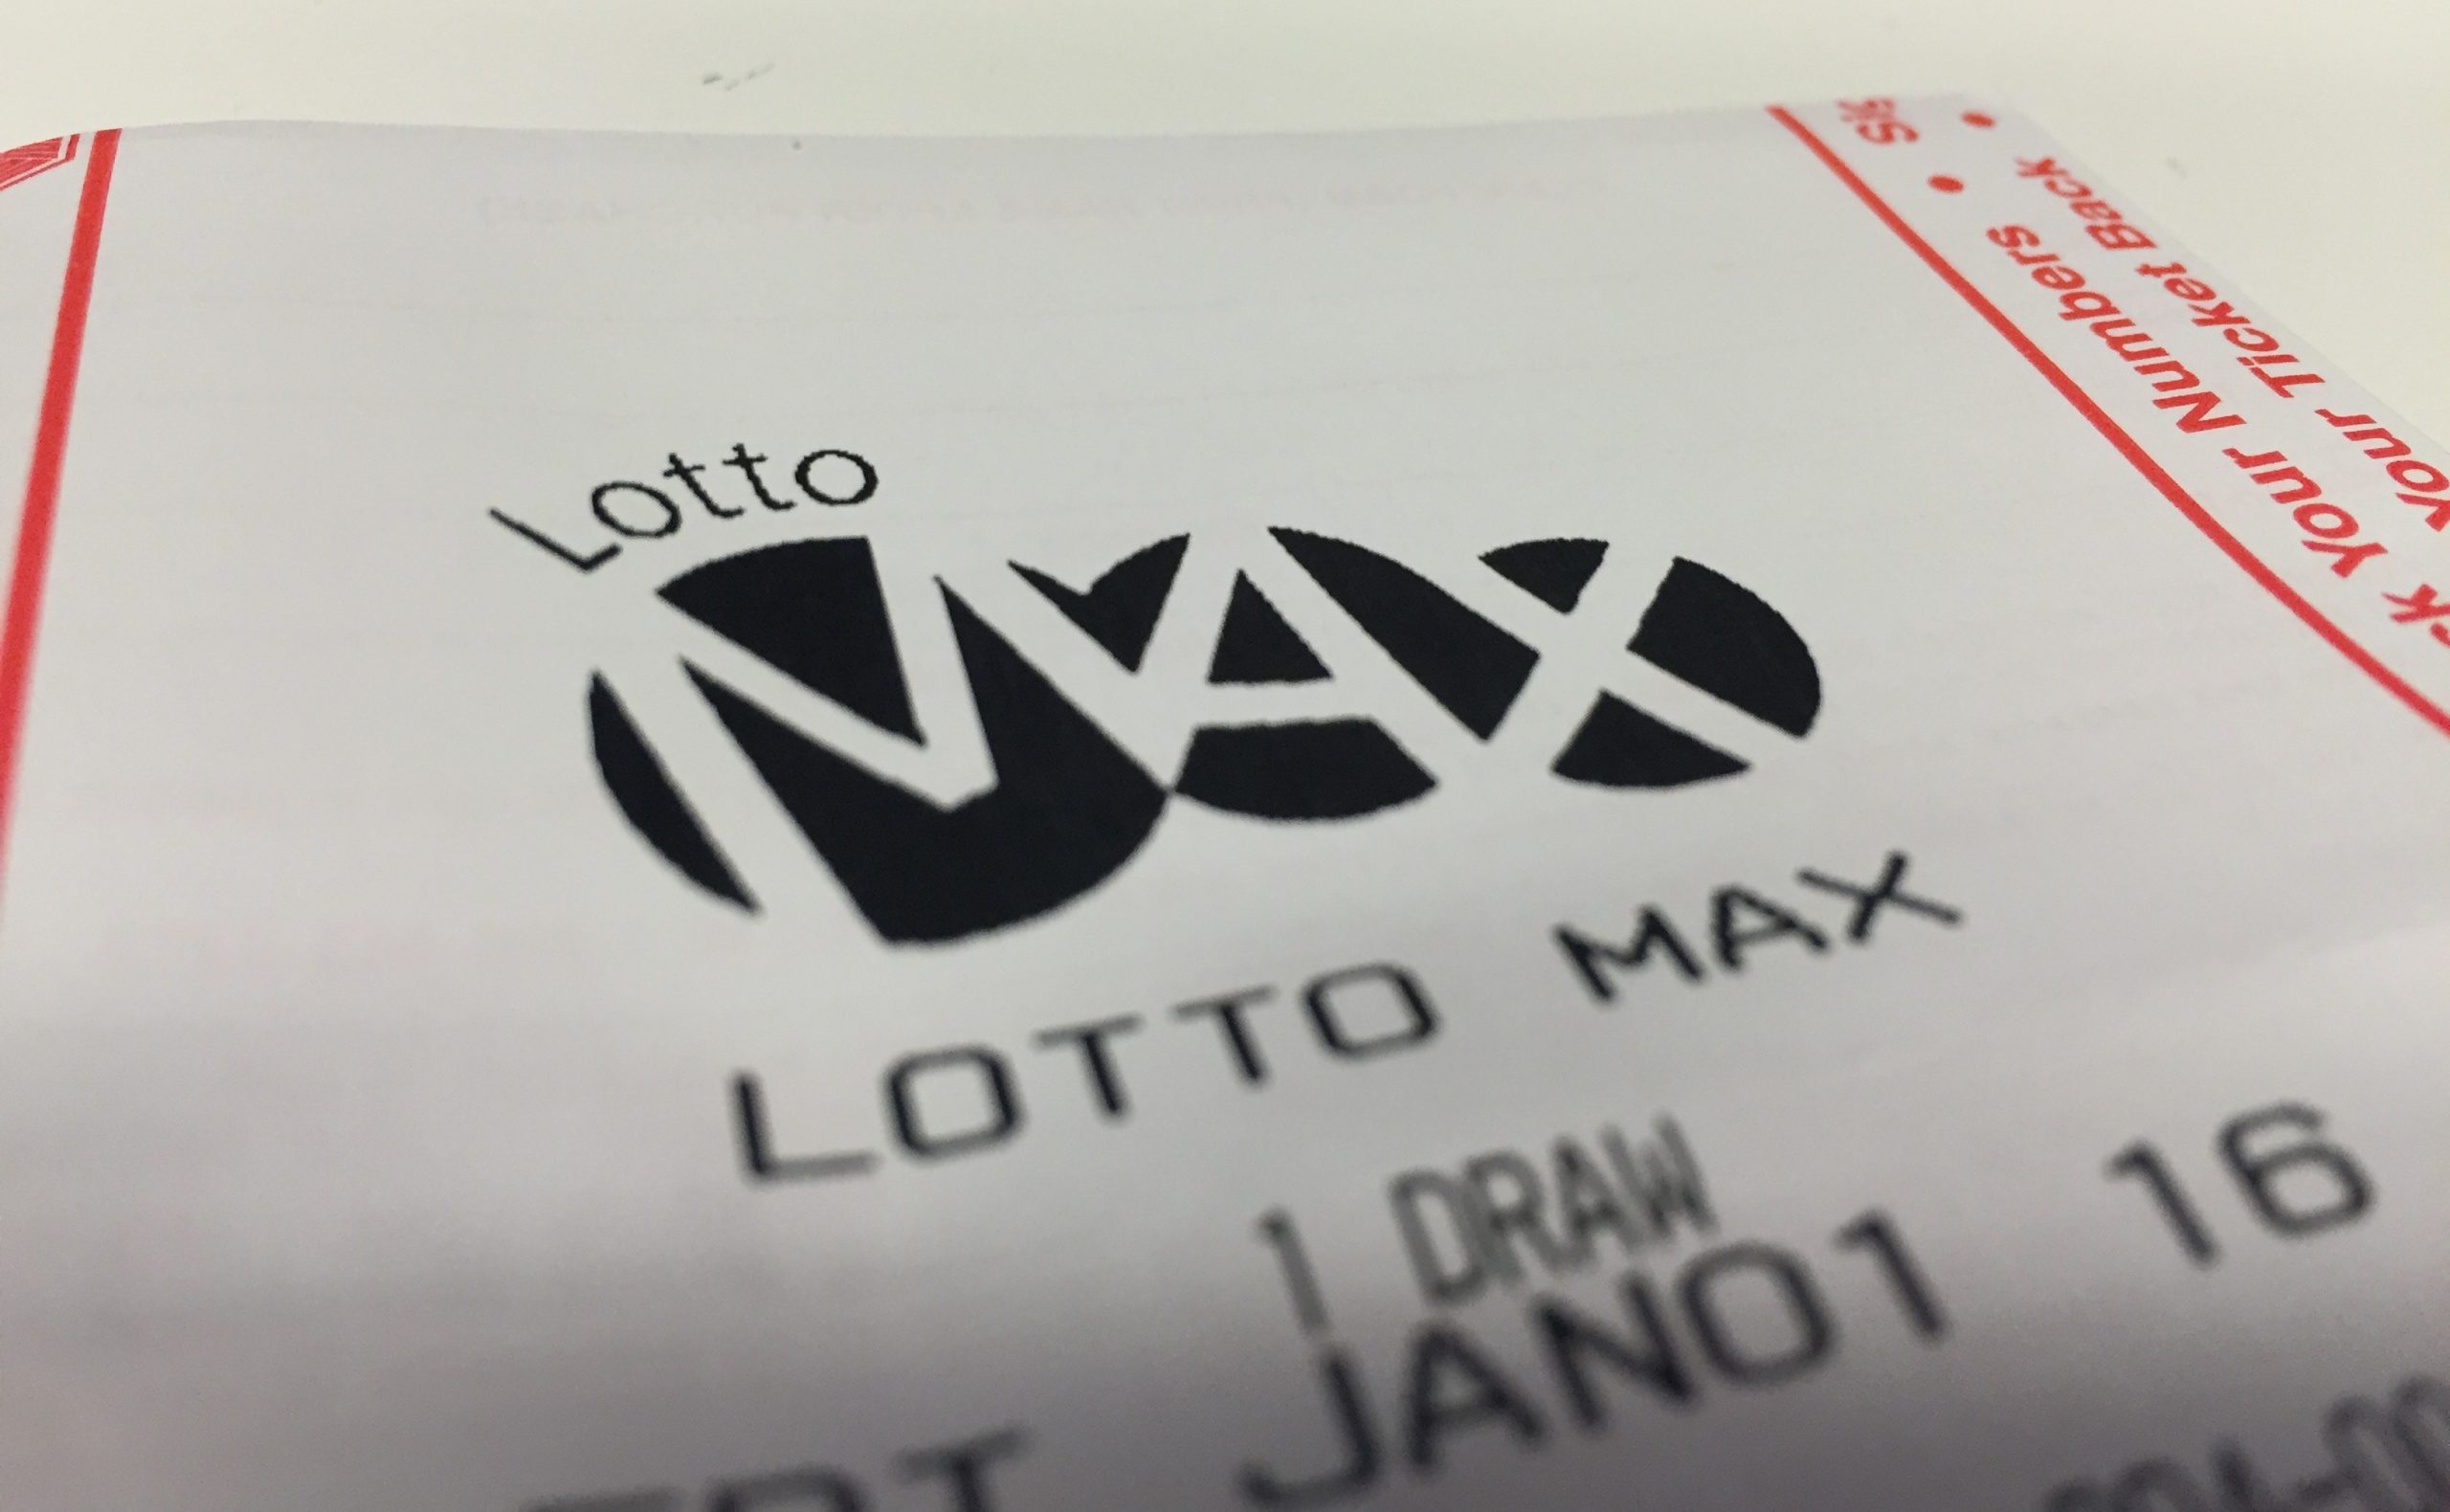 lotto max ticket sales